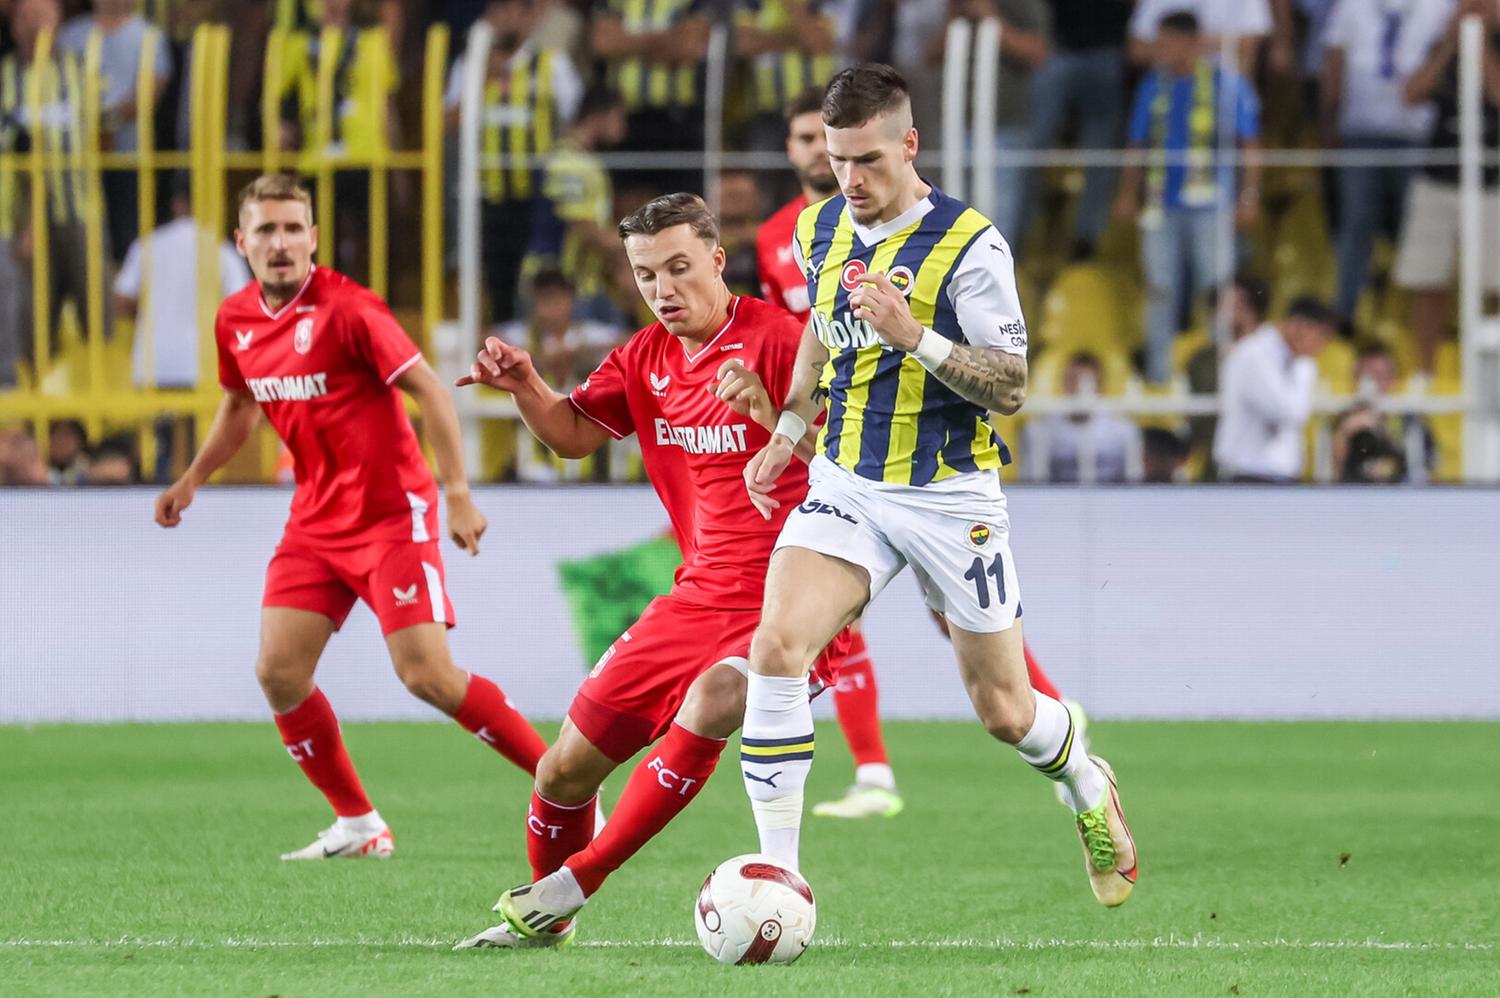 O Fenerbahçe vive um início de temporada impecável, 100% no Campeonato Turco